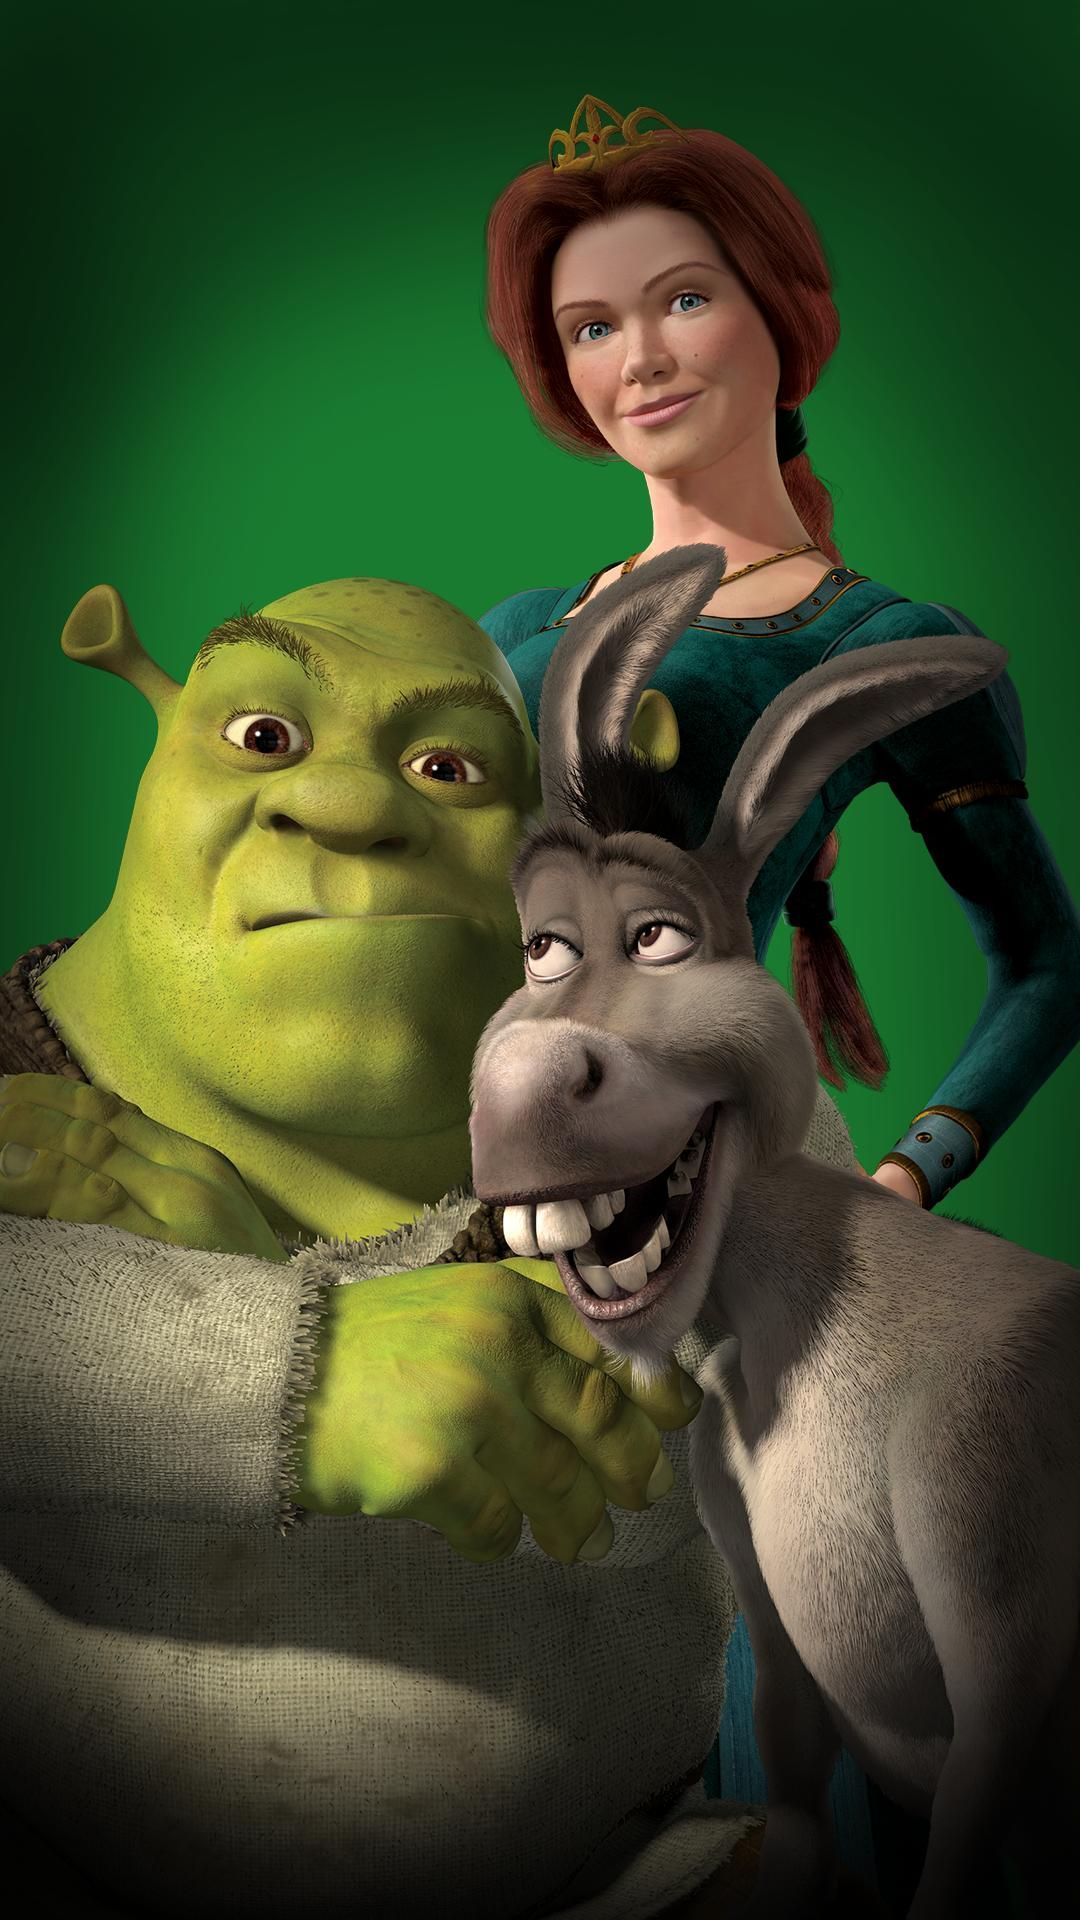 Shrek, Donkey and Princess Fiona are ready to be a family - Shrek